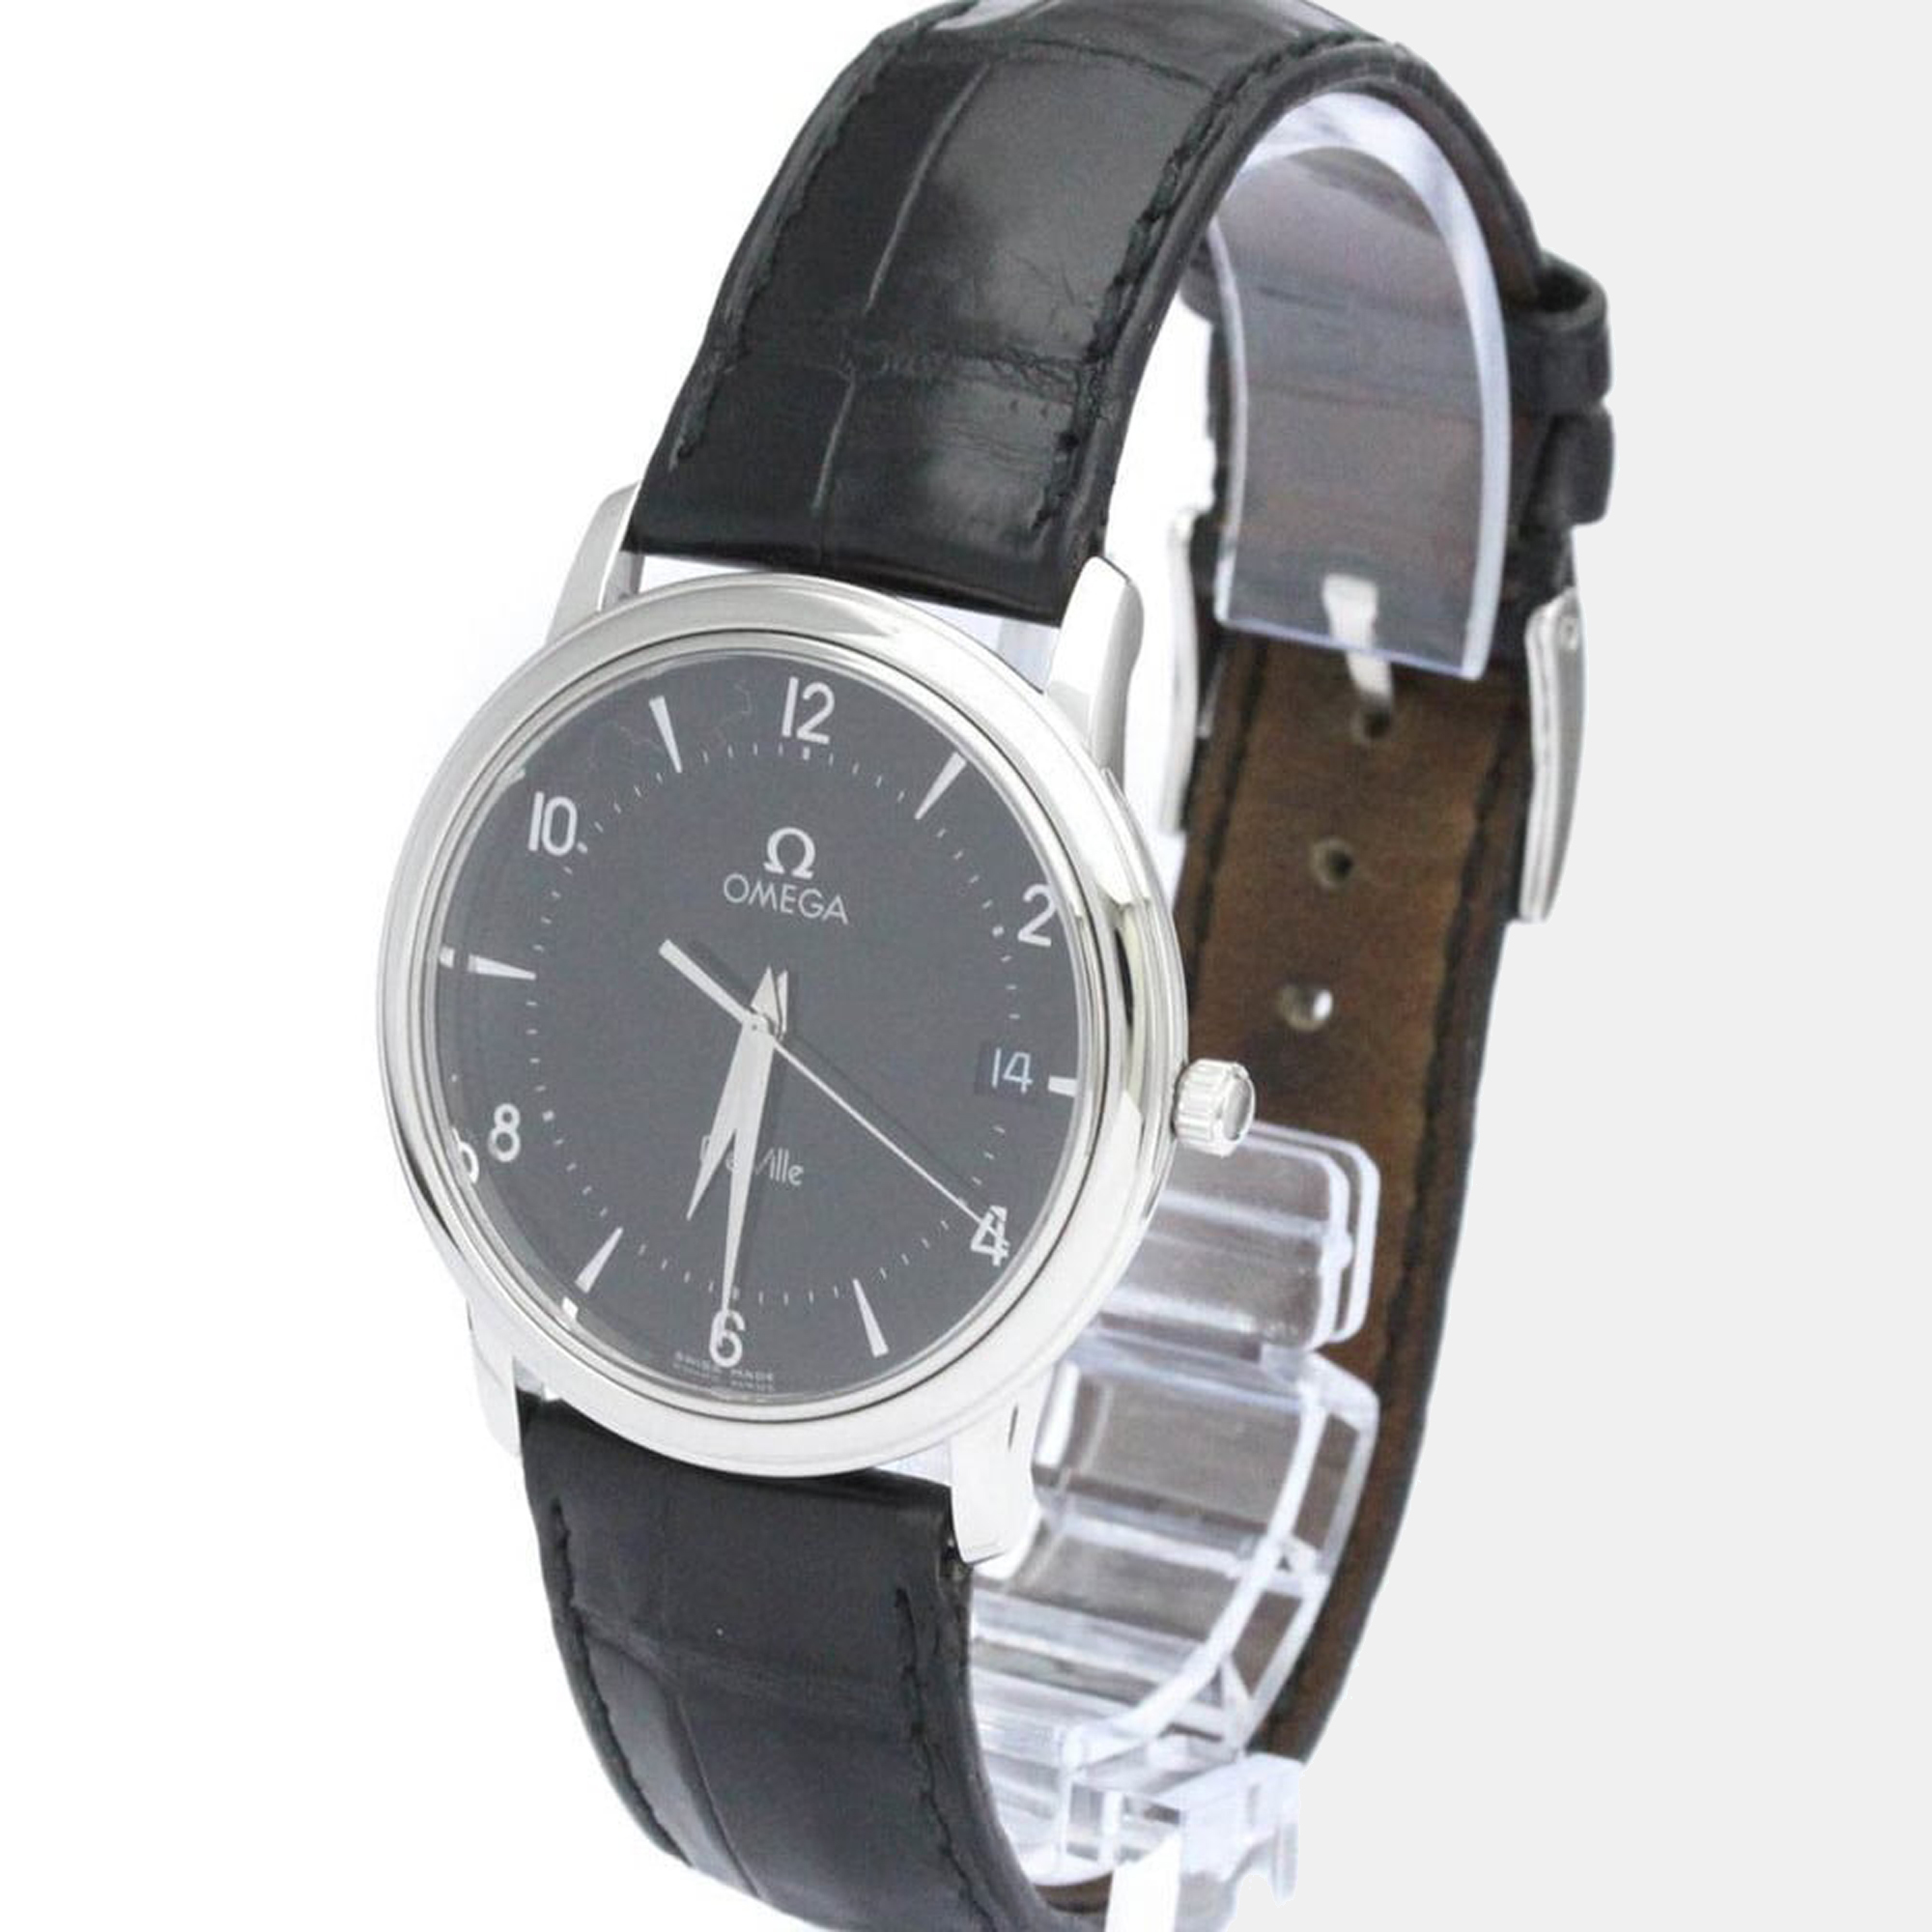 Omega Black Stainless Steel De Ville 4810.50.01 Men's Wristwatch 34 Mm